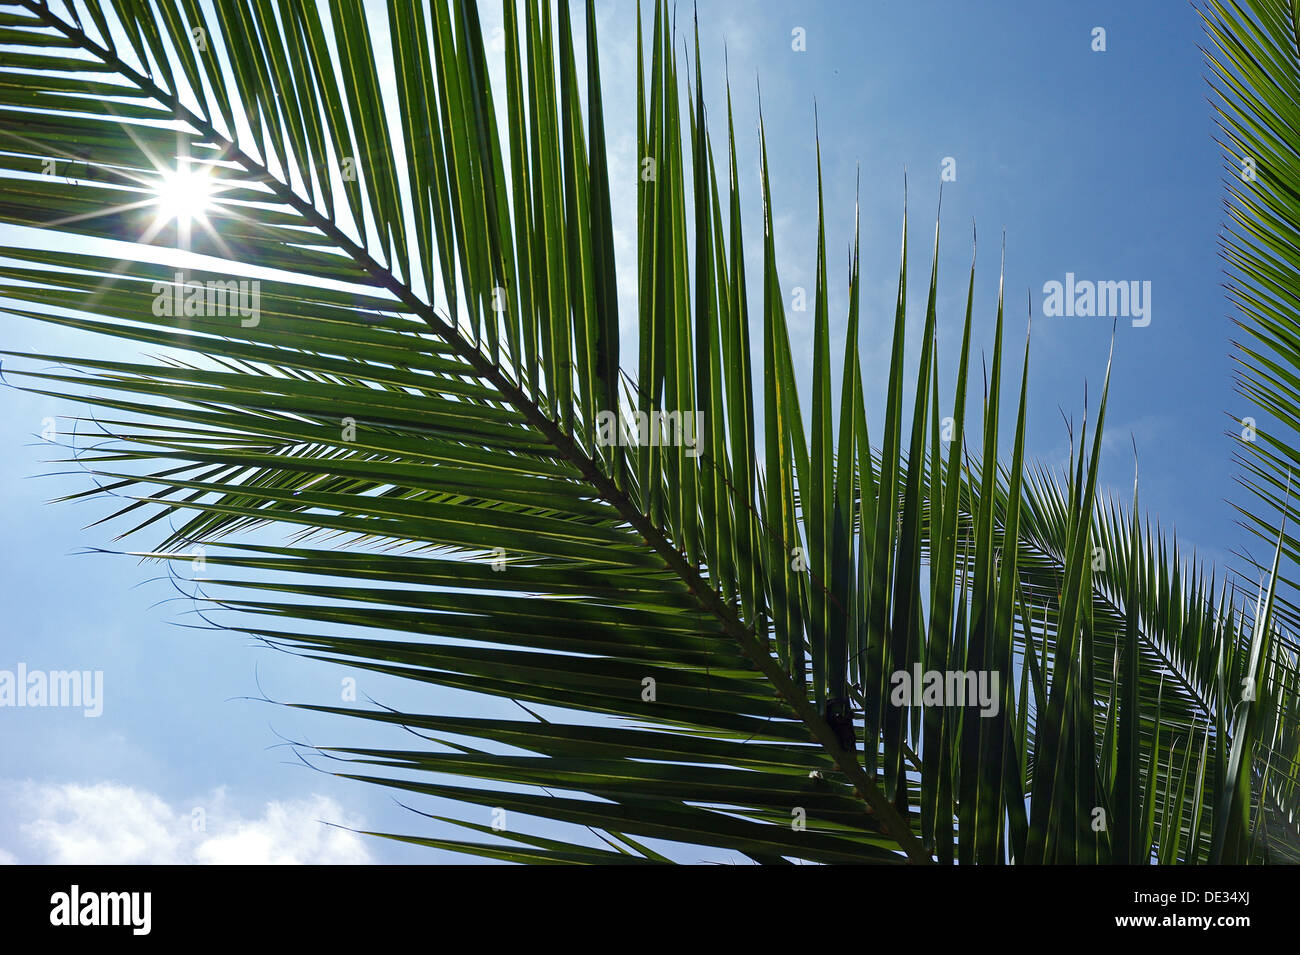 Ramo di palma immagini e fotografie stock ad alta risoluzione - Alamy